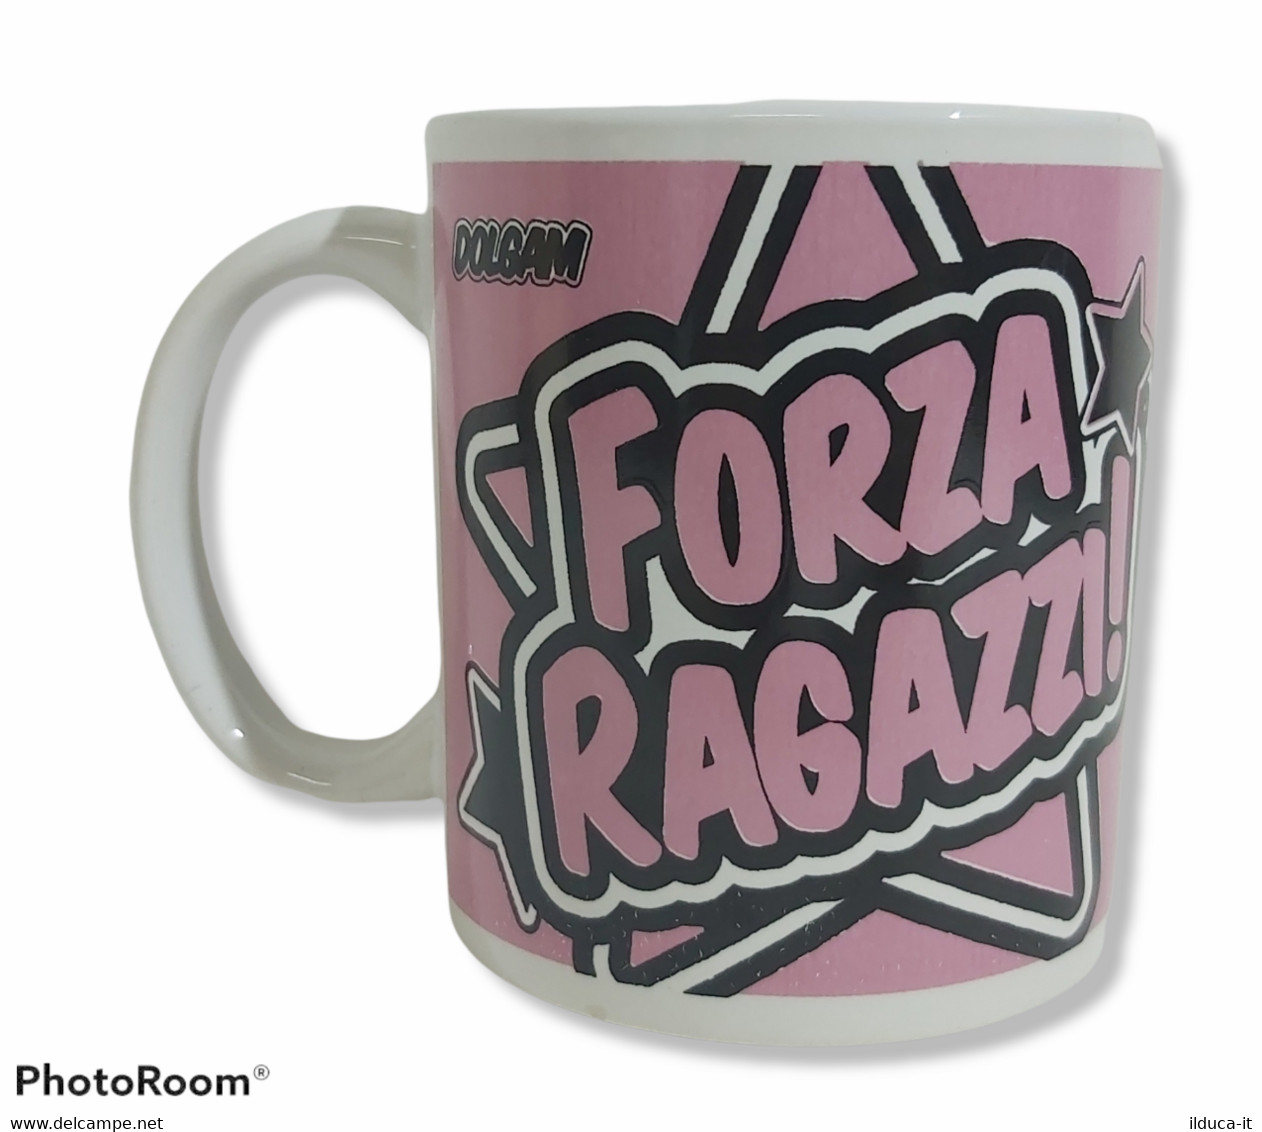 14016 Tazza (Mug) - Palermo Calcio - Forza Ragazzi - Cups